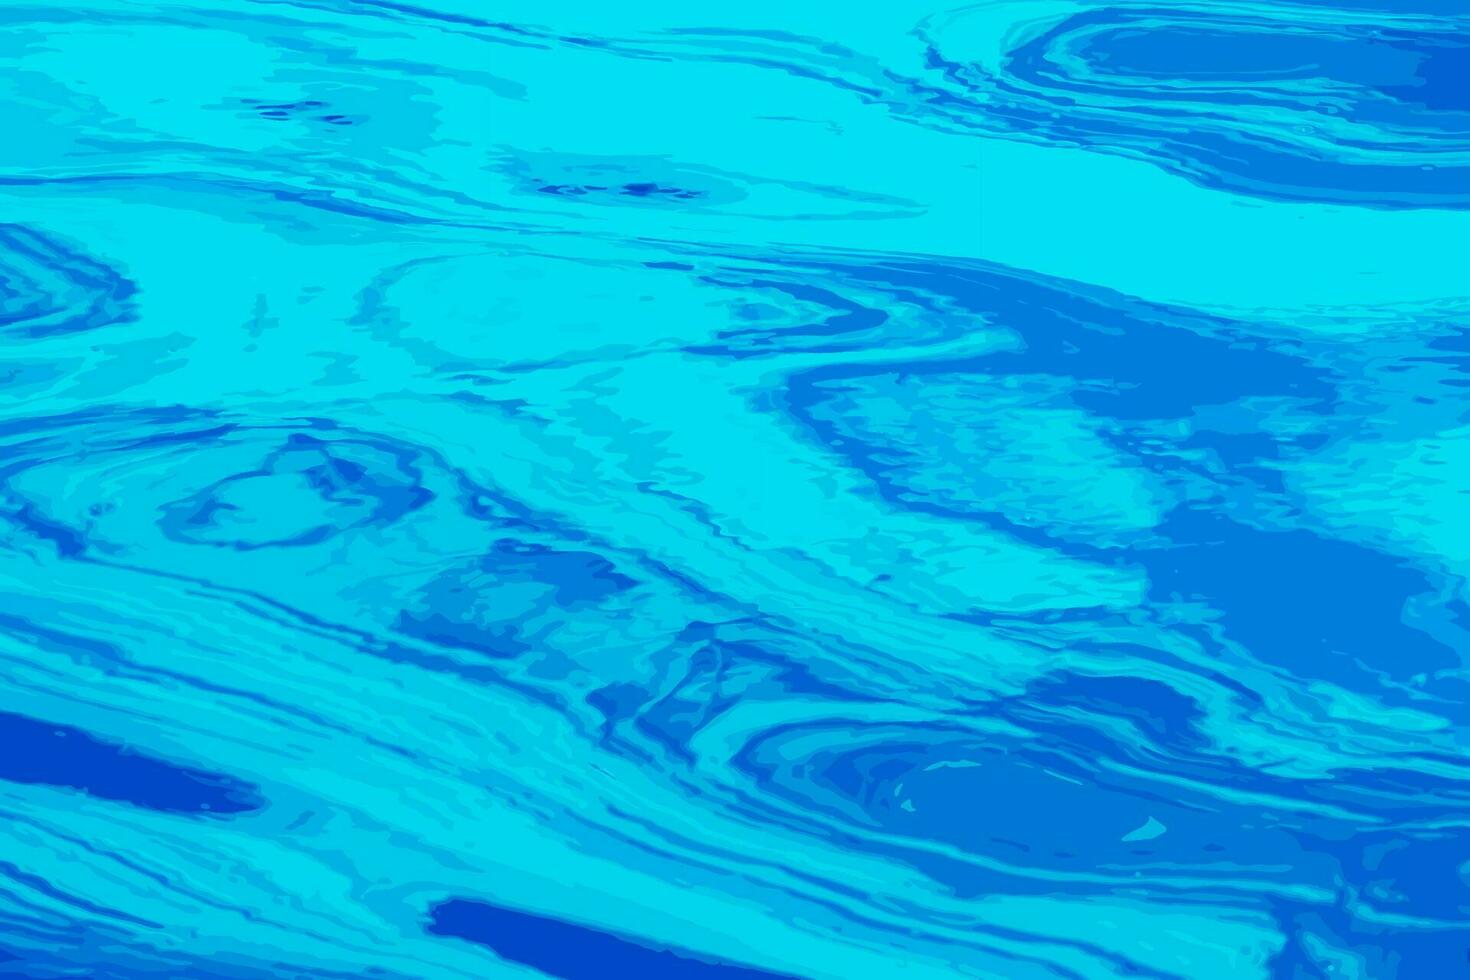 ilustração em vetor de fundo de textura de ondulação de água. superfície da água ondulada durante o pôr do sol, luz dourada refletindo na água.